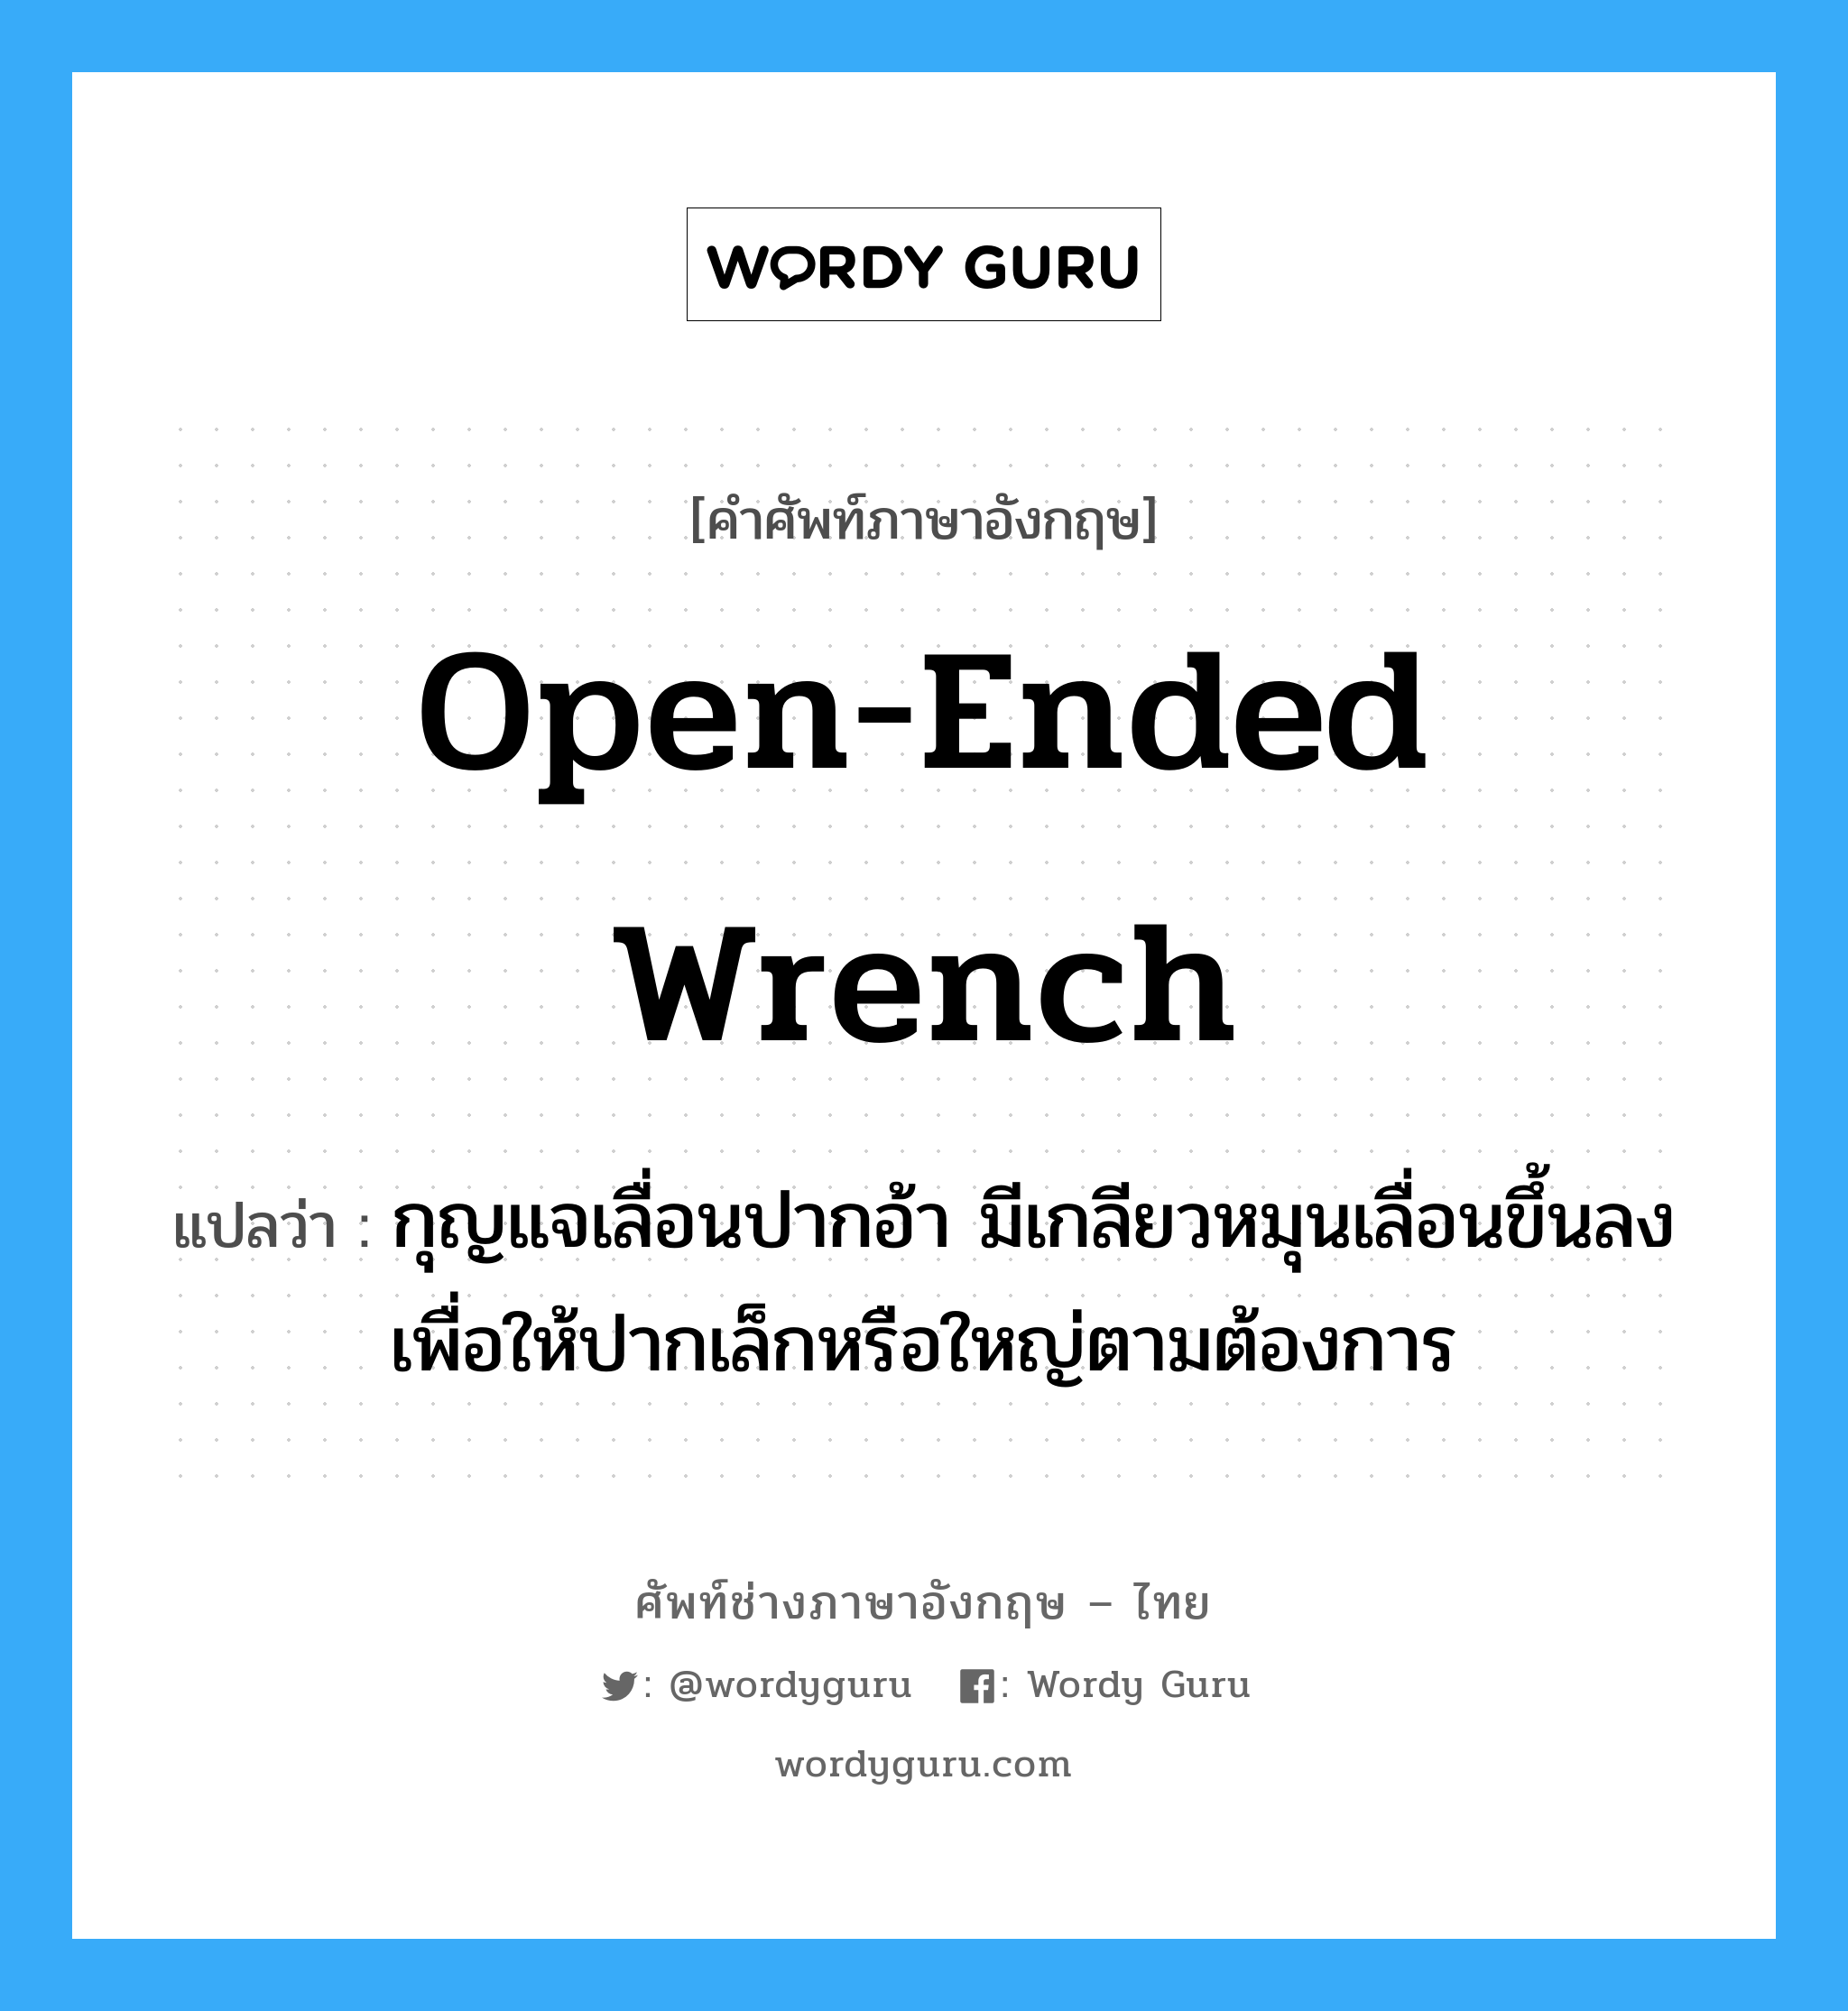 open-ended wrench แปลว่า?, คำศัพท์ช่างภาษาอังกฤษ - ไทย open-ended wrench คำศัพท์ภาษาอังกฤษ open-ended wrench แปลว่า กุญแจเลื่อนปากอ้า มีเกลียวหมุนเลื่อนขึ้นลง เพื่อให้ปากเล็กหรือใหญ่ตามต้องการ